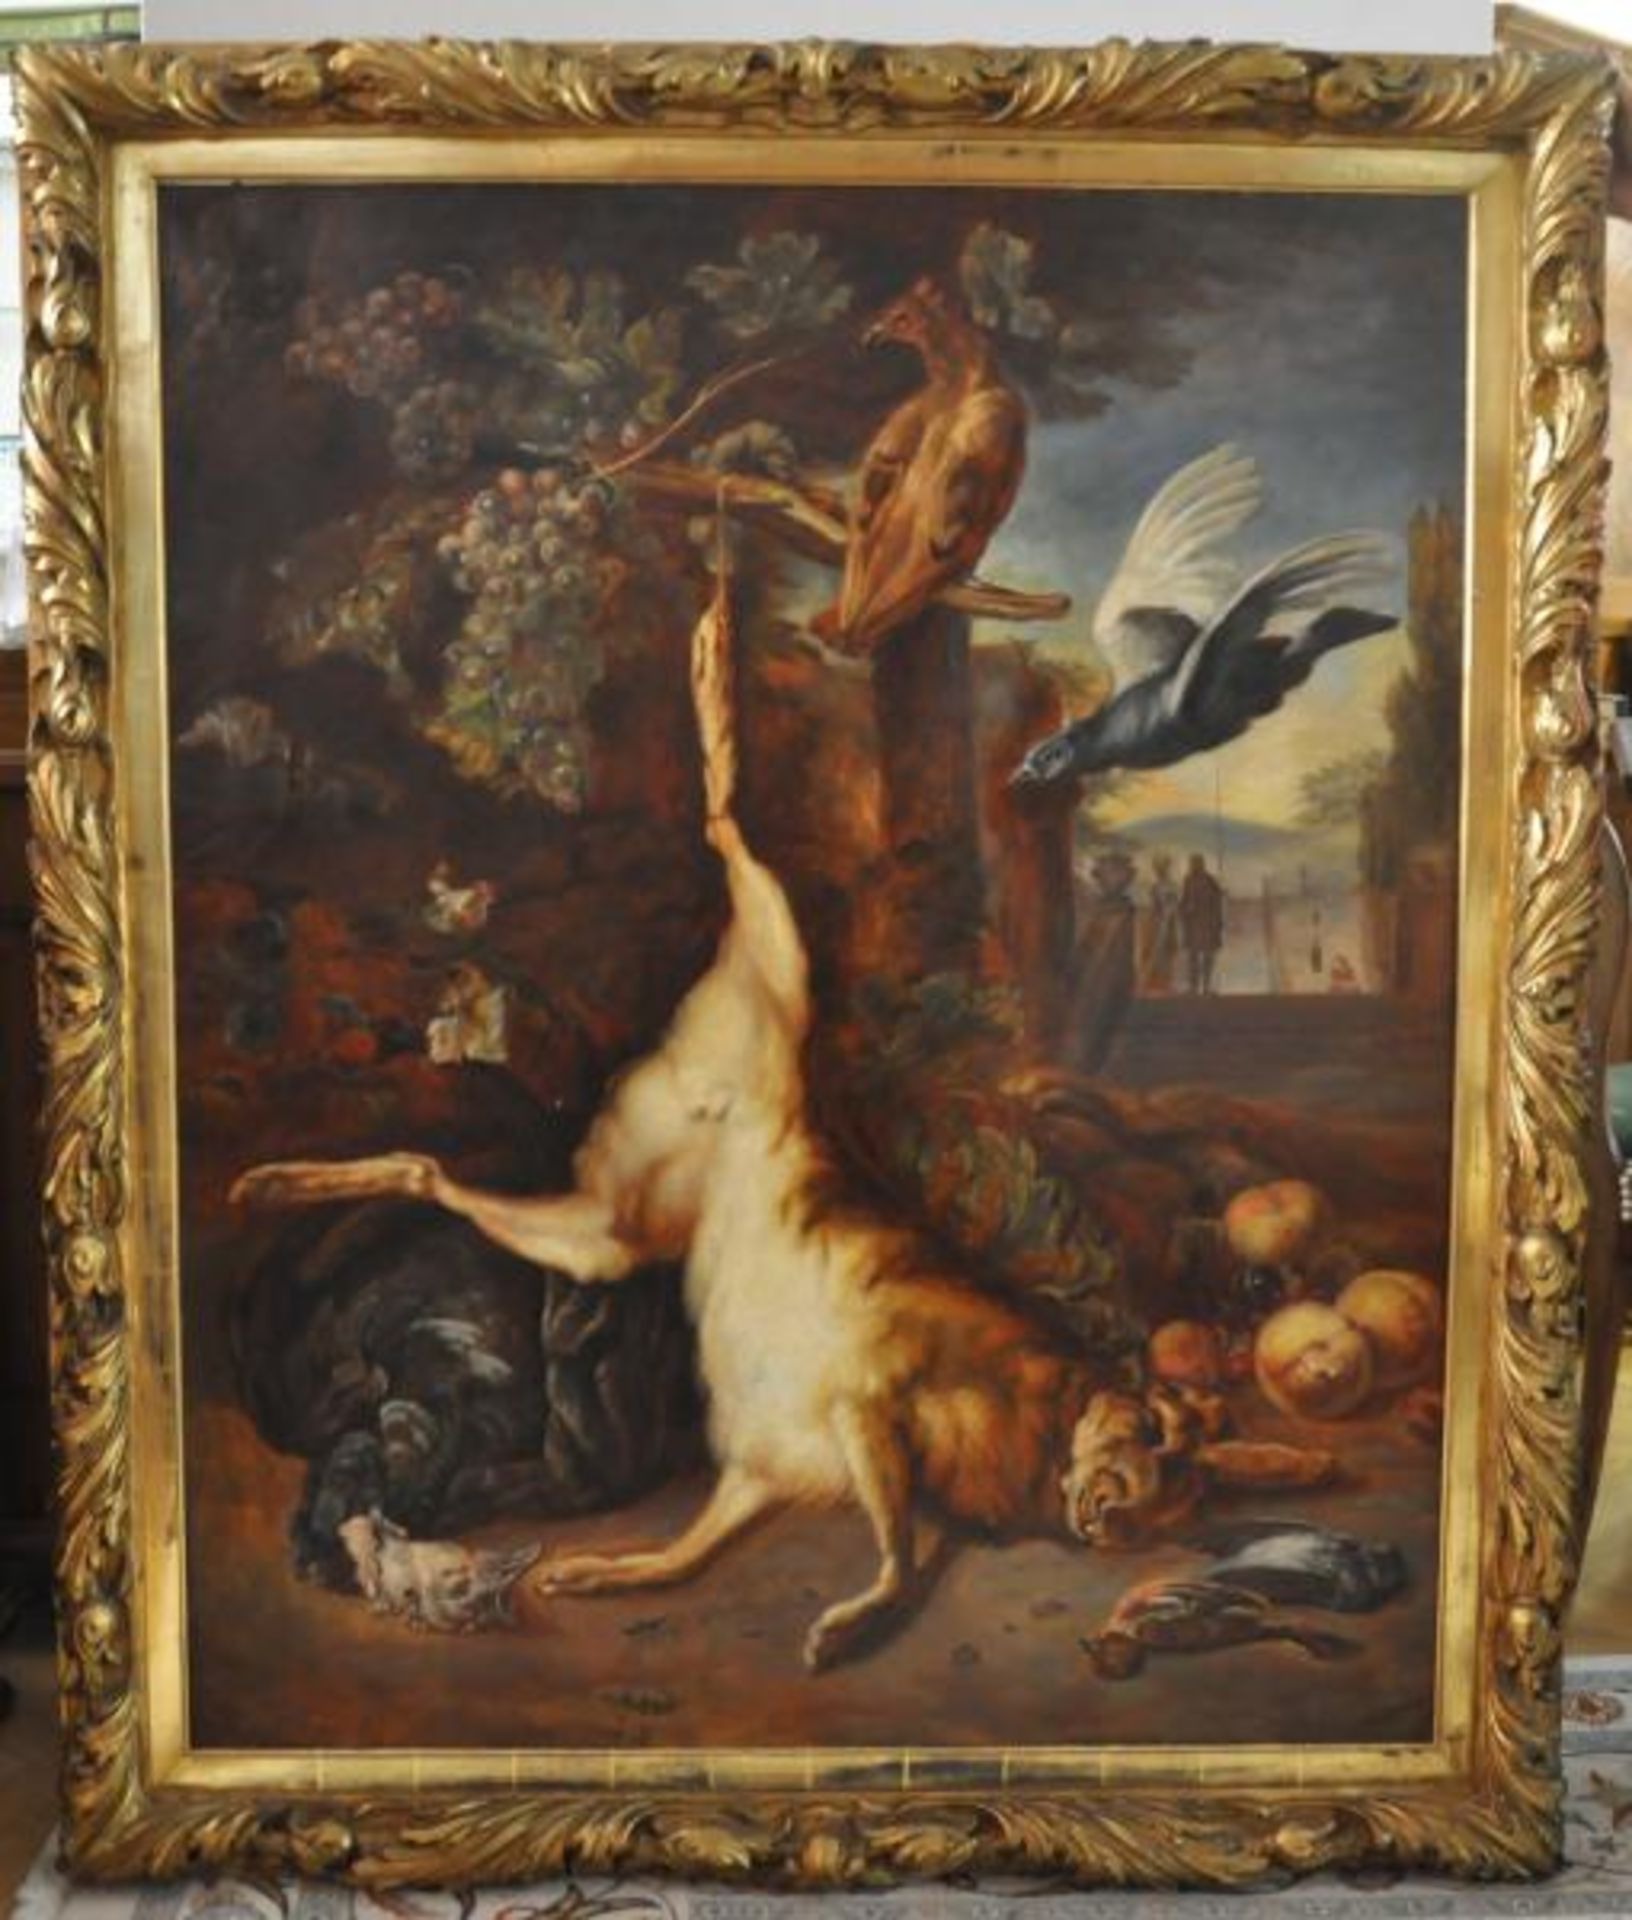 STILLLEBENMALER (19./20.Jh.) "Jagdstillleben", mit totem Hasen u. Vögeln, im Hintergrund Treppe - Bild 2 aus 4